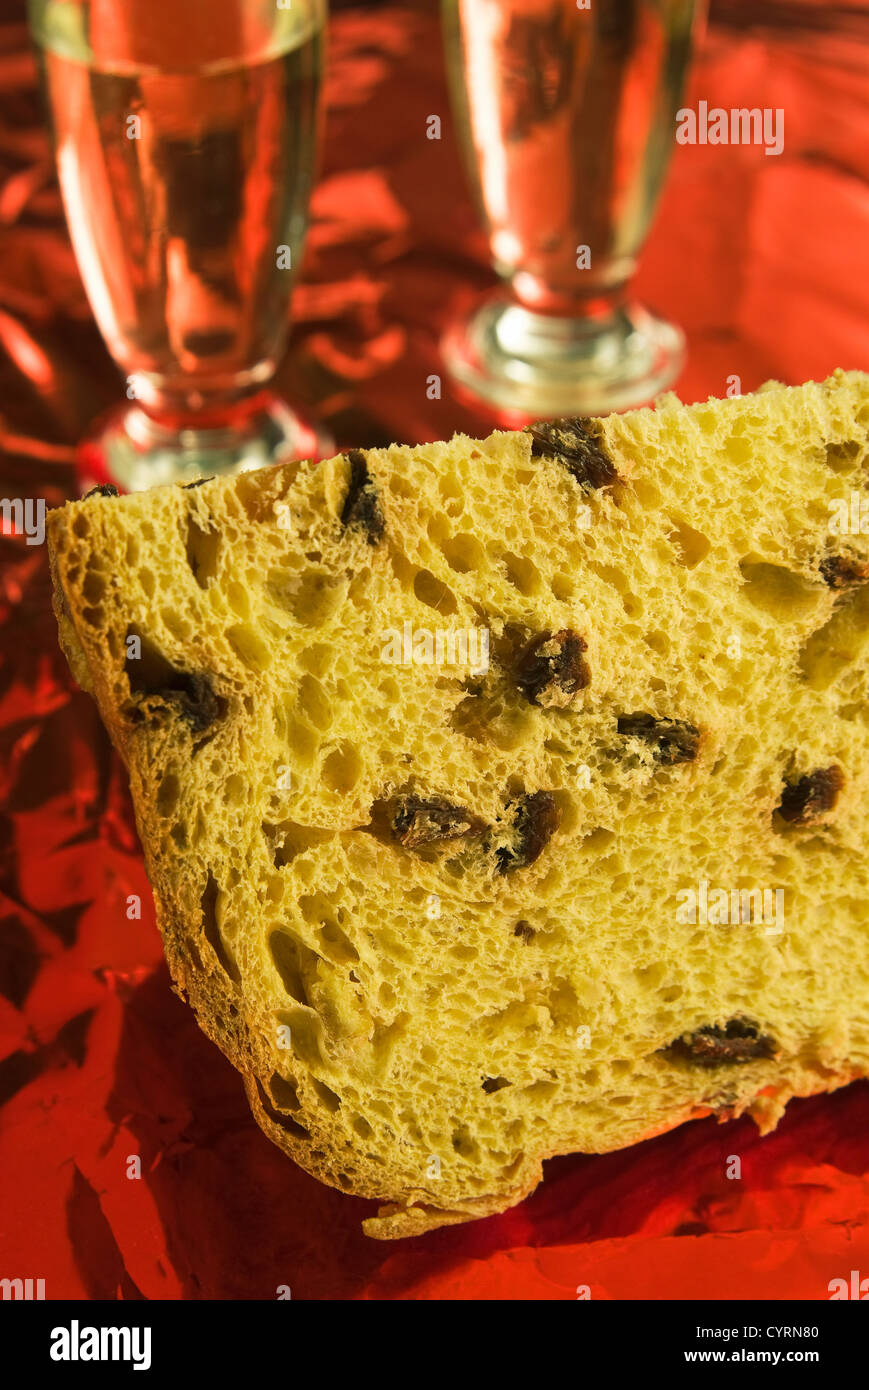 Scheibe des Panettone (ist eine Art von süßem Brot Brot ursprünglich aus Mailand), Weihnachtskuchen, Italien Stockfoto